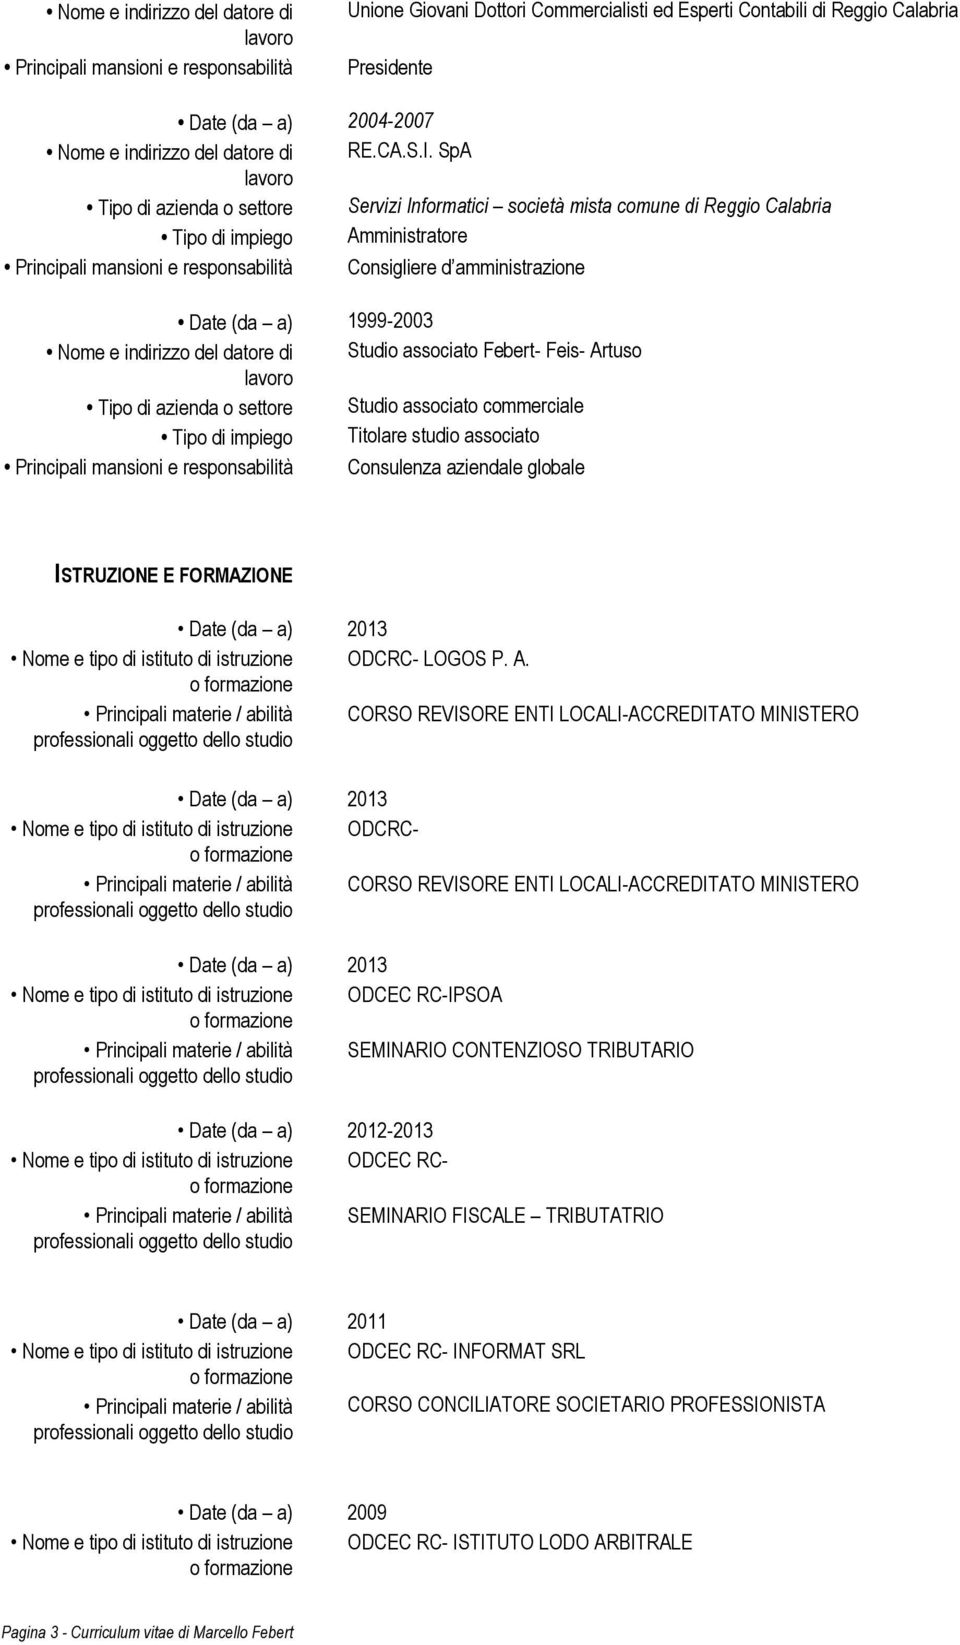 SpA Tipo di azienda o settore Servizi Informatici società mista comune di Reggio Calabria Tipo di impiego Amministratore Principali mansioni e responsabilità Consigliere d amministrazione Date (da a)